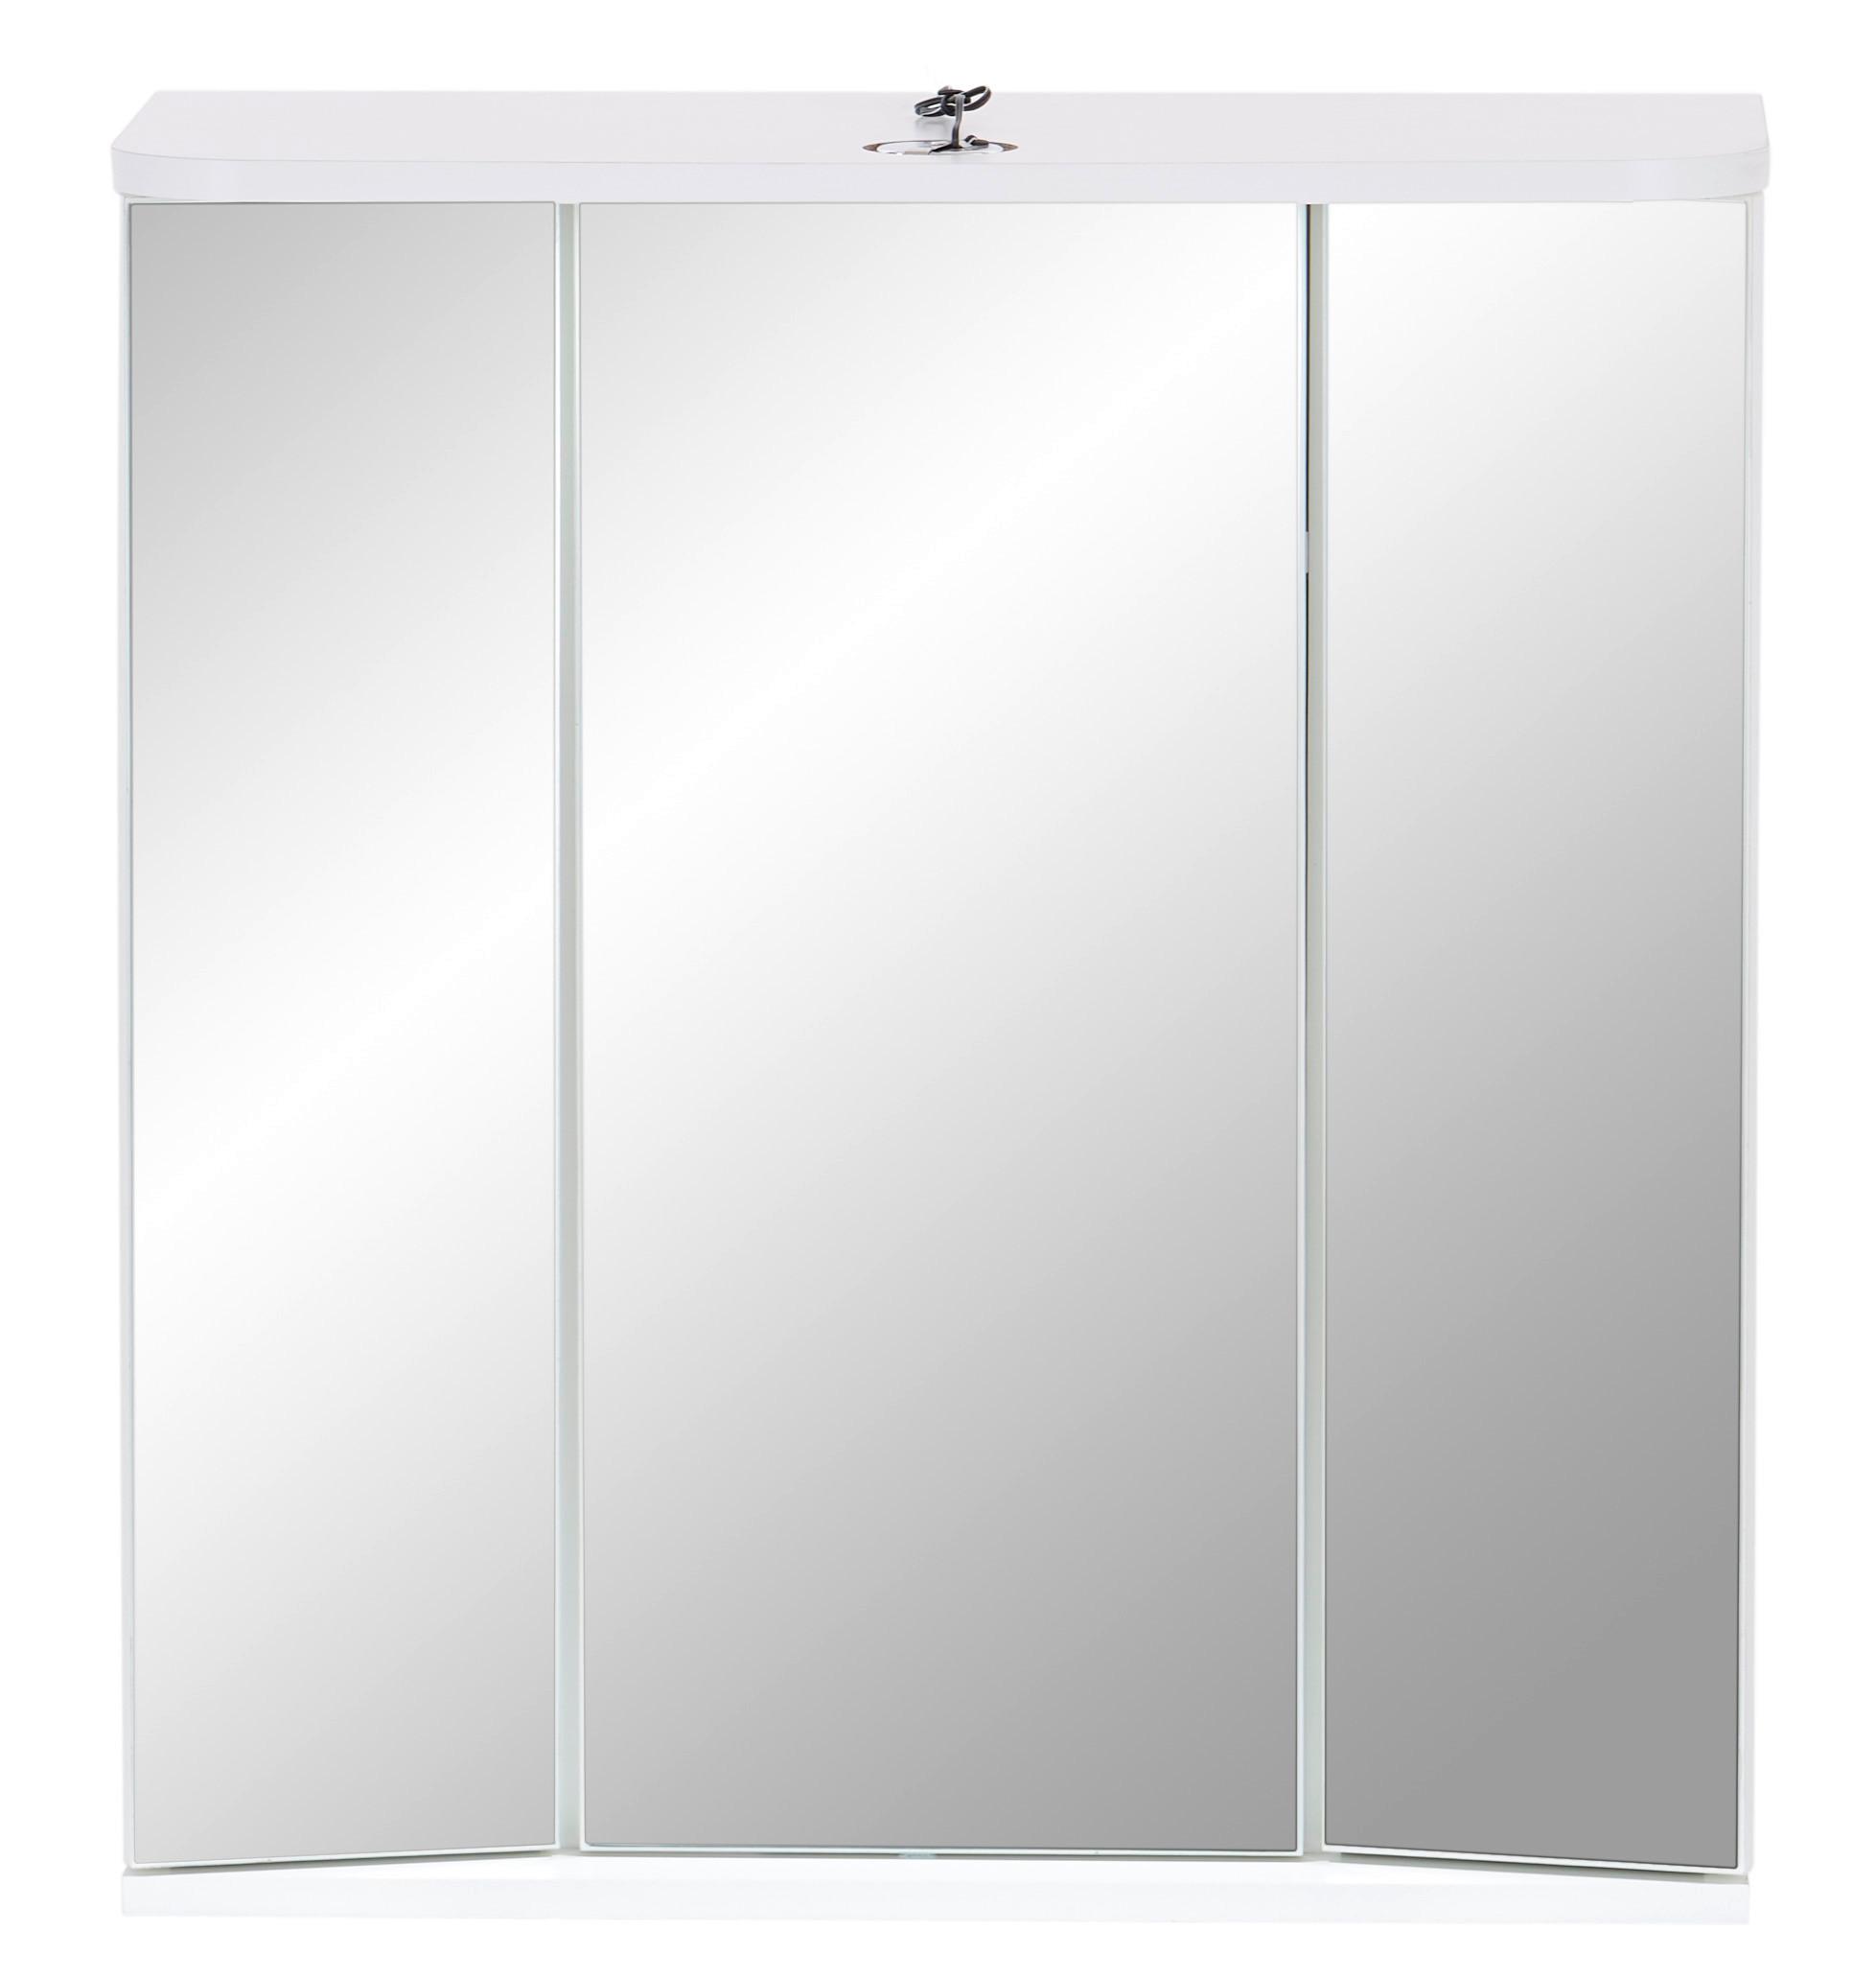 Skříňka Se Zrcadlem Mx 180 - Verona Vr 22 - bílá, Konvenční, kompozitní dřevo (64cm)